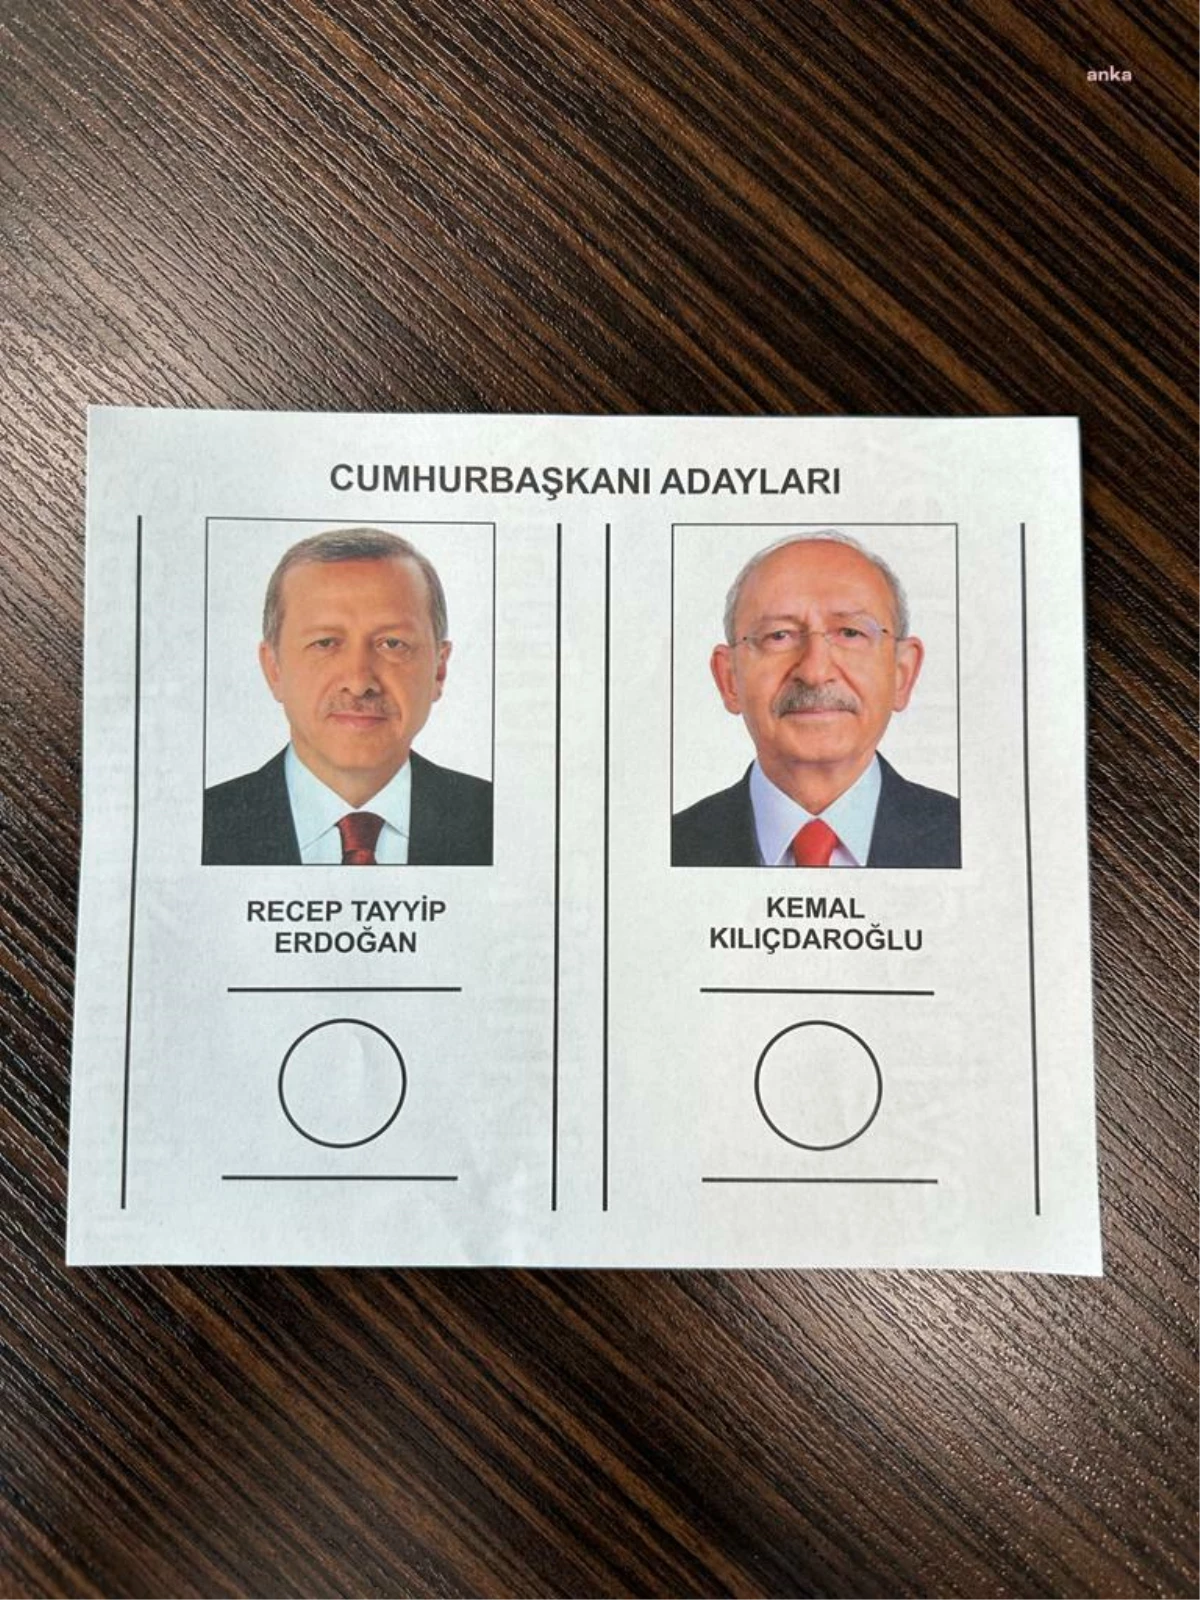 Ysk, Cumhurbaşkanlığı Seçimi İkinci Turu İçin Pusula Örneğini Yayınladı… Erdoğan Solda, Kılıçdaroğlu Sağda Yer Aldı